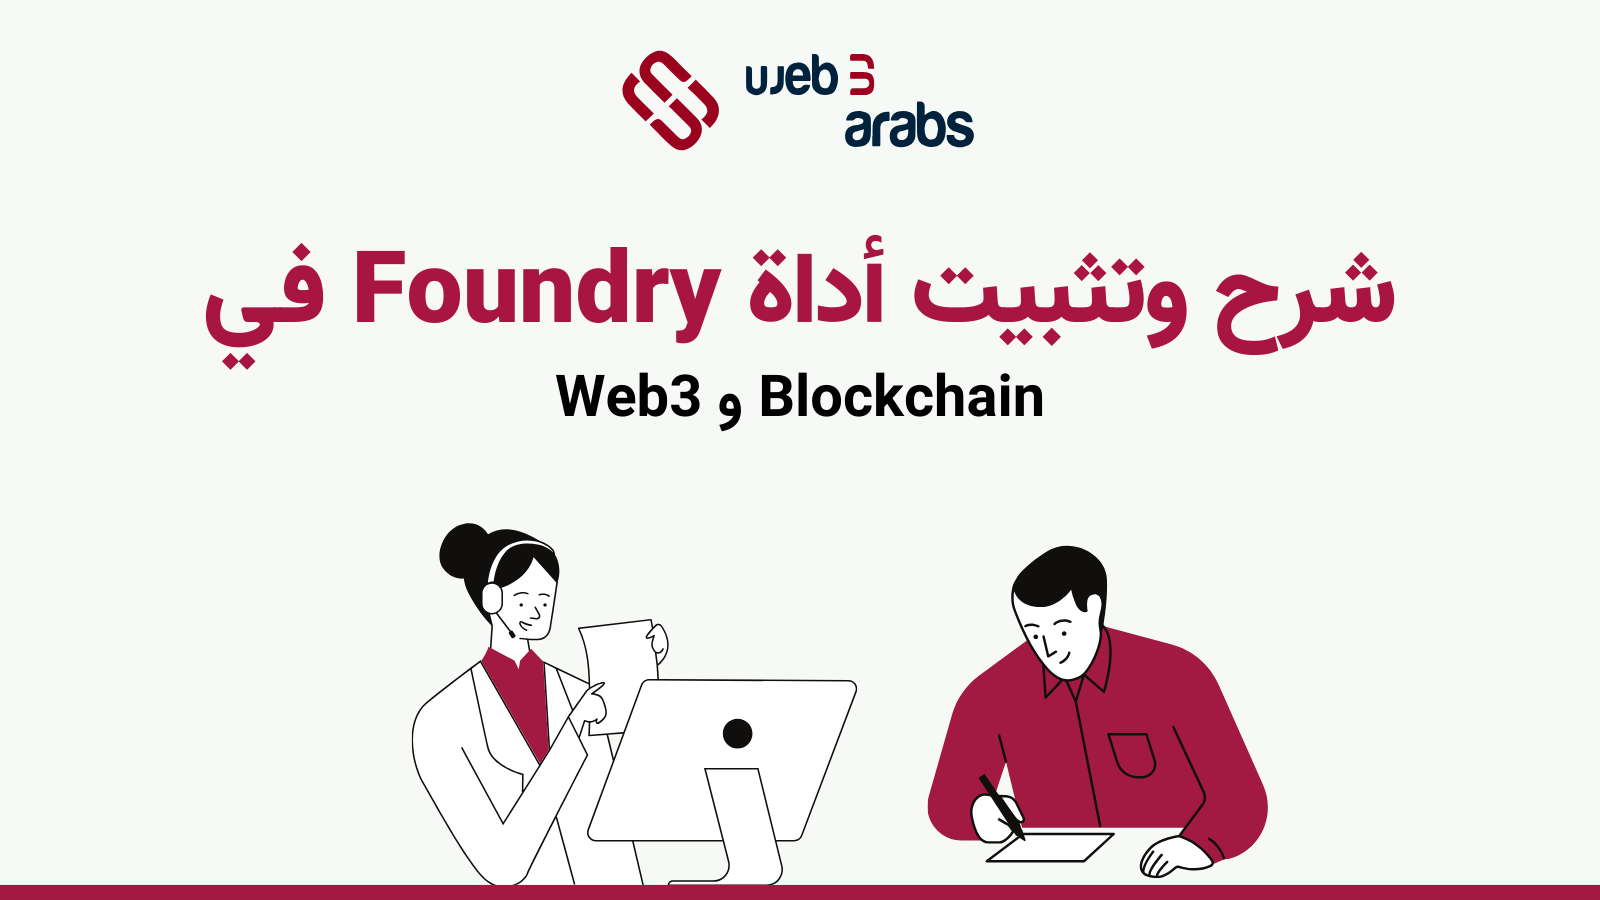 اداة Foundry هي مجموعة أدوات للمطورين الذين يرغبون في إنشاء تطبيقات جديدة على شبكات البلوكتشين من النوع EVM. يصفها الموقع الرسمي بأنها ”سلسلة أدوات“ لتطوير العقود الذكية.